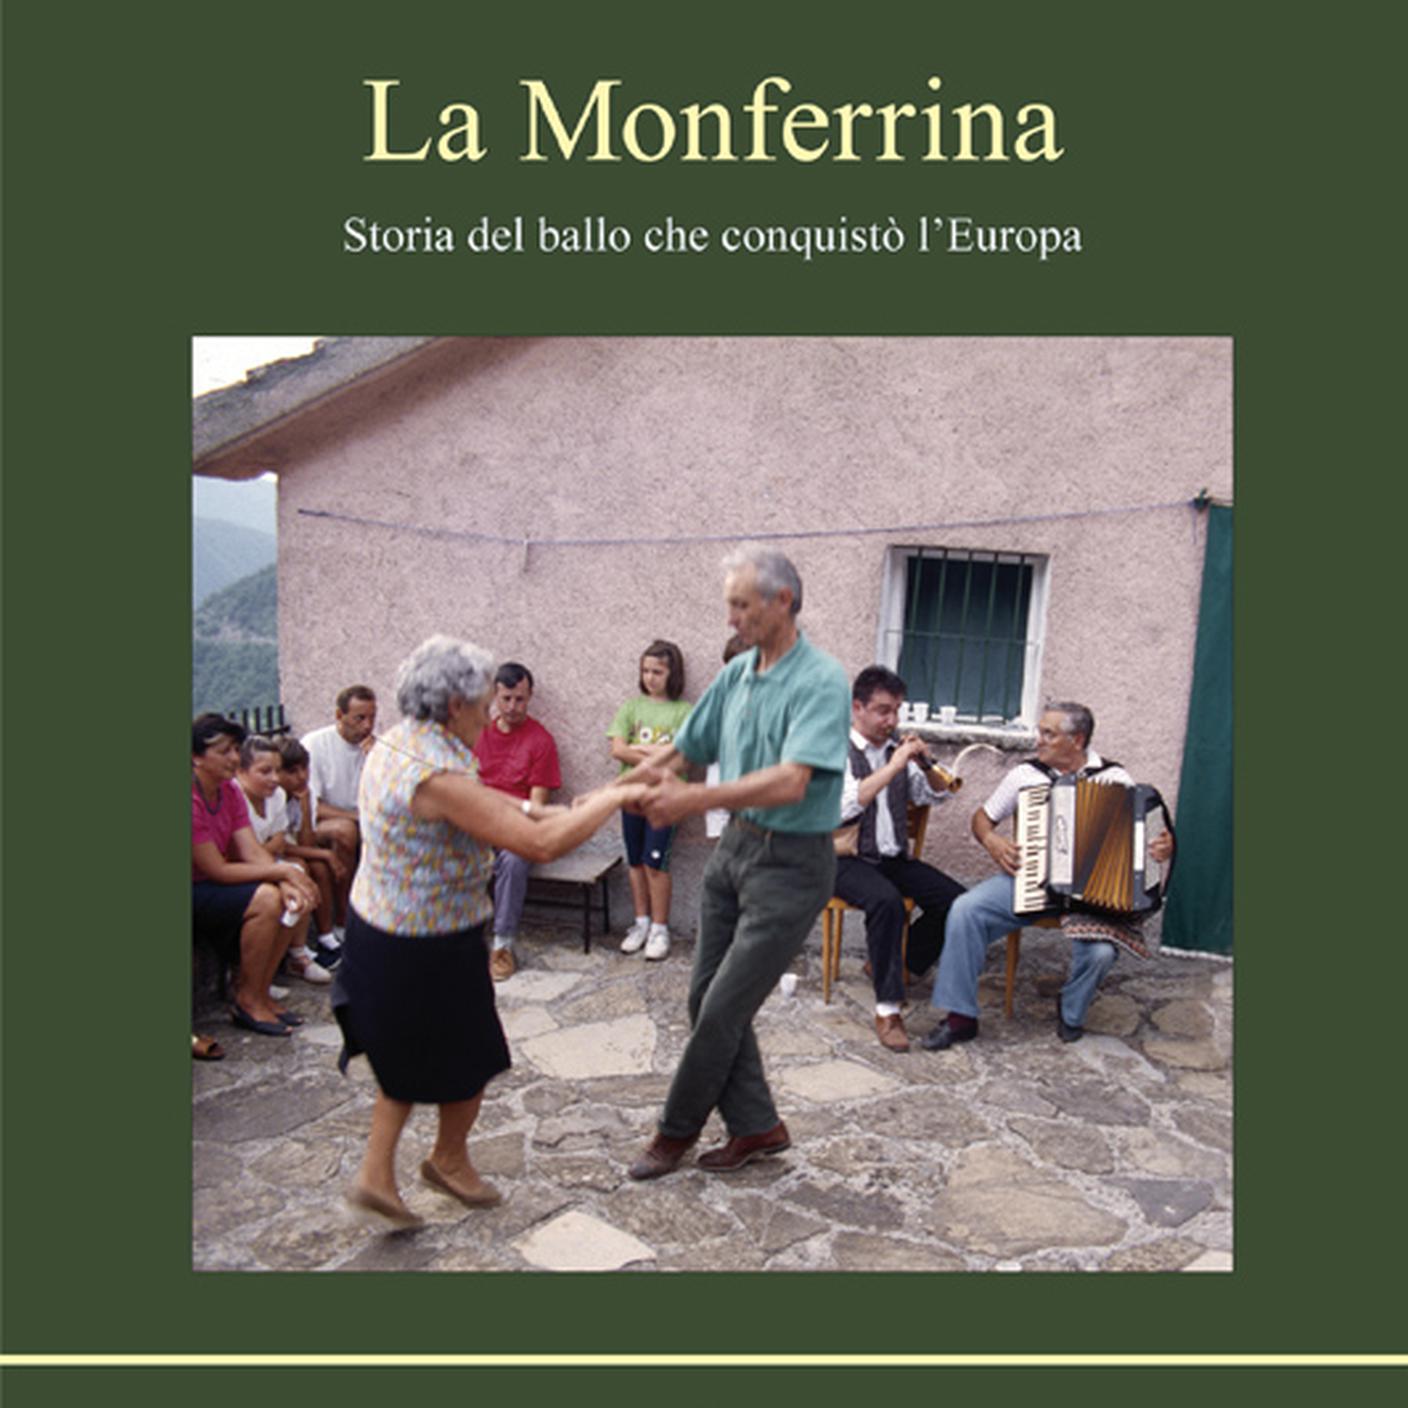 "La Monferrina. Storia del ballo che conquistò l’Europa" di Giuliano Grasso, Associazione culturale Barabàn (dettaglio di copertina)